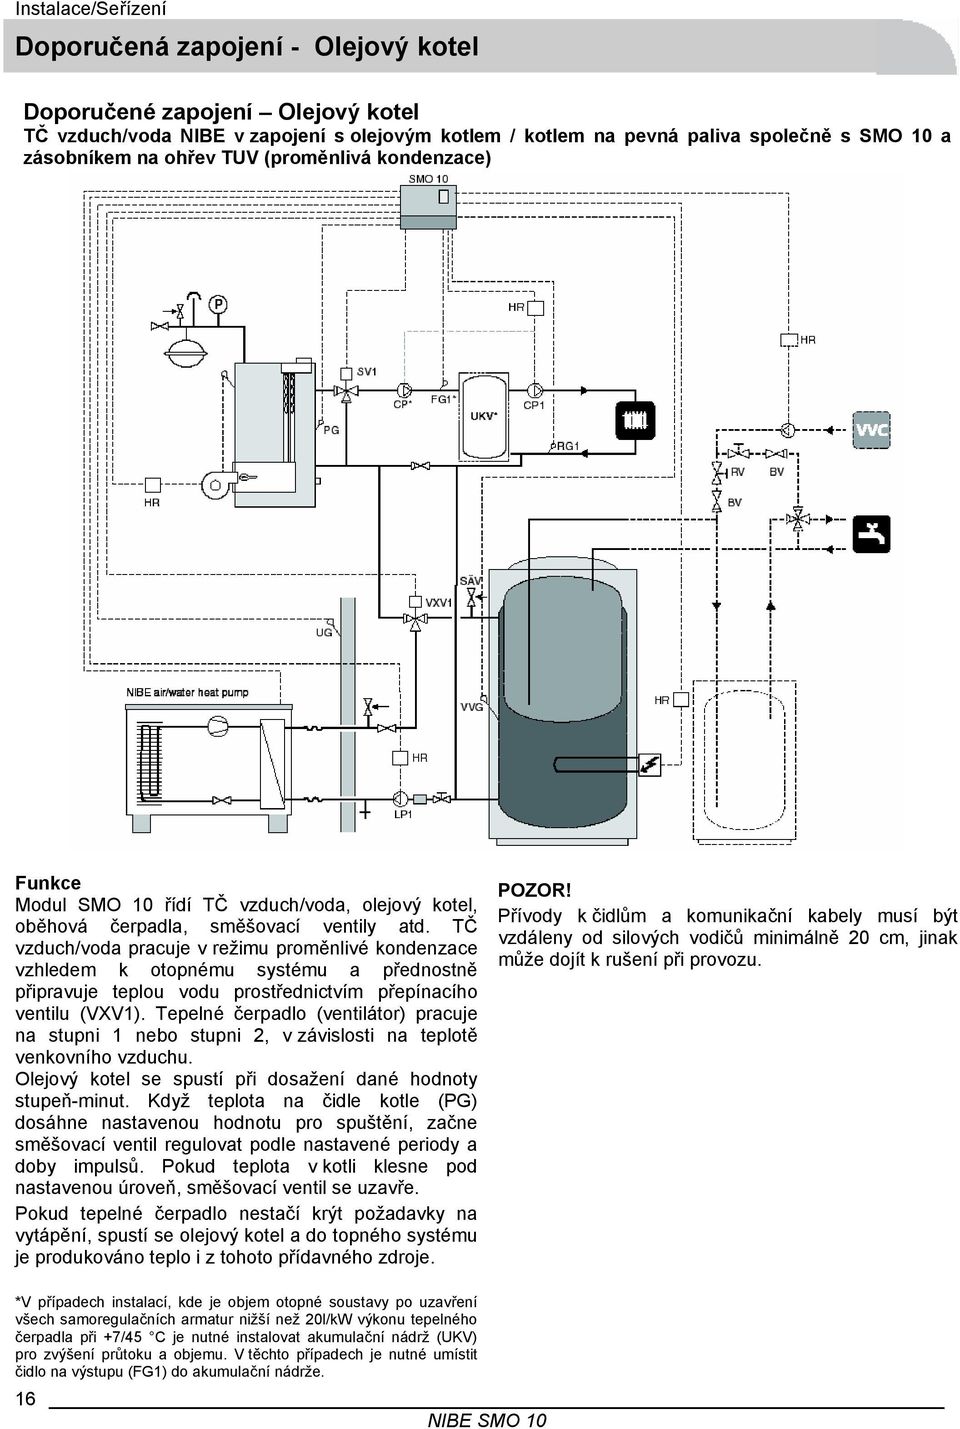 TČ vzduch/voda pracuje v režimu proměnlivé kondenzace vzhledem k otopnému systému a přednostně připravuje teplou vodu prostřednictvím přepínacího ventilu (VXV1).